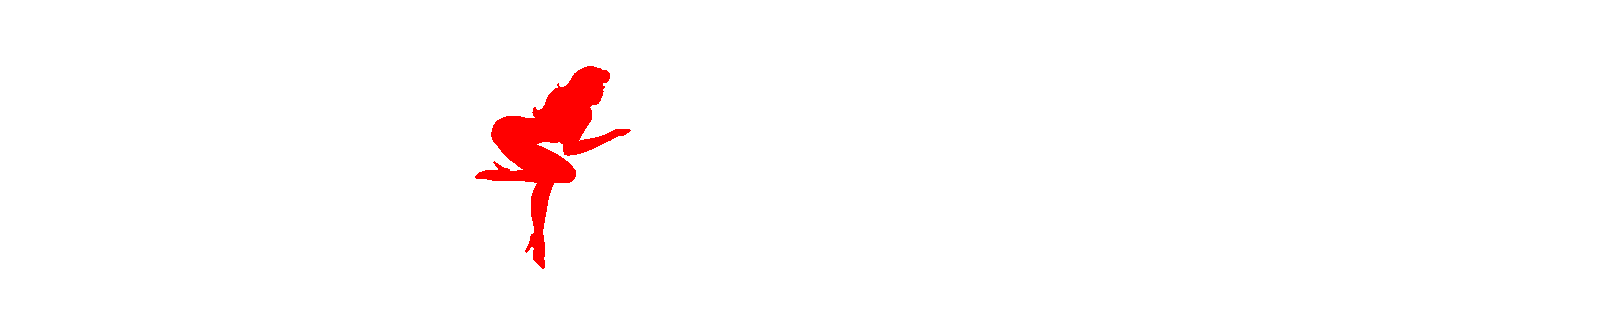 Nice-Bikes.com